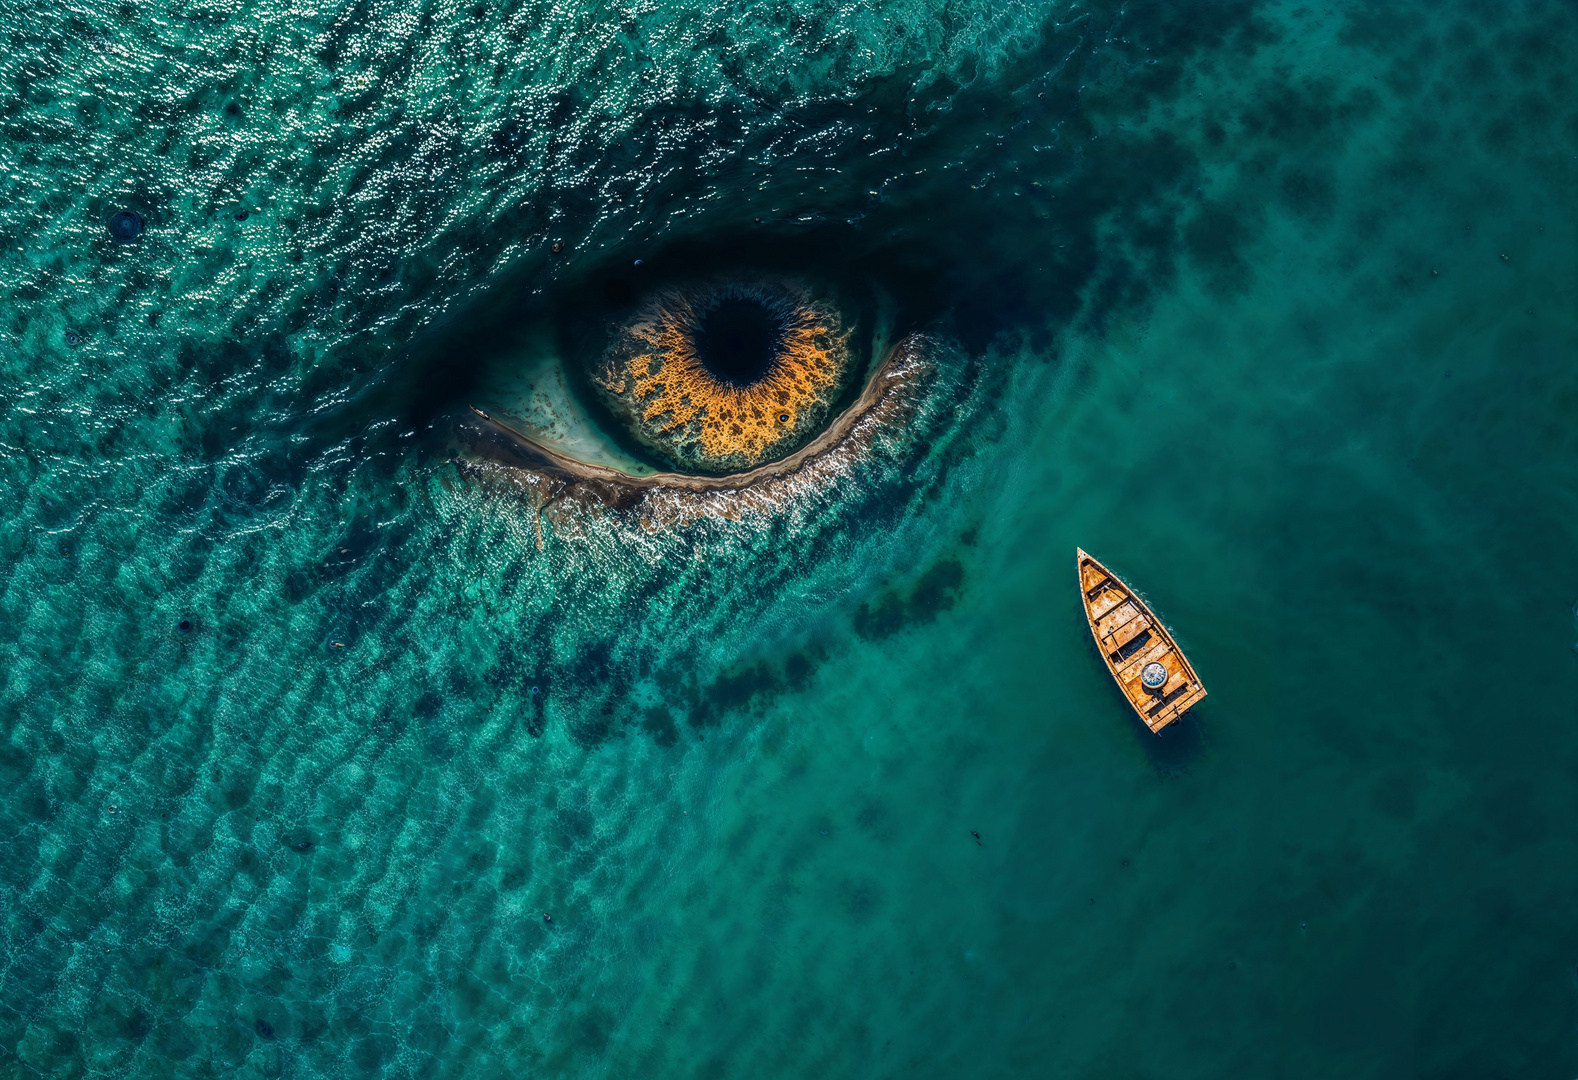 Das Auge des Ozeans